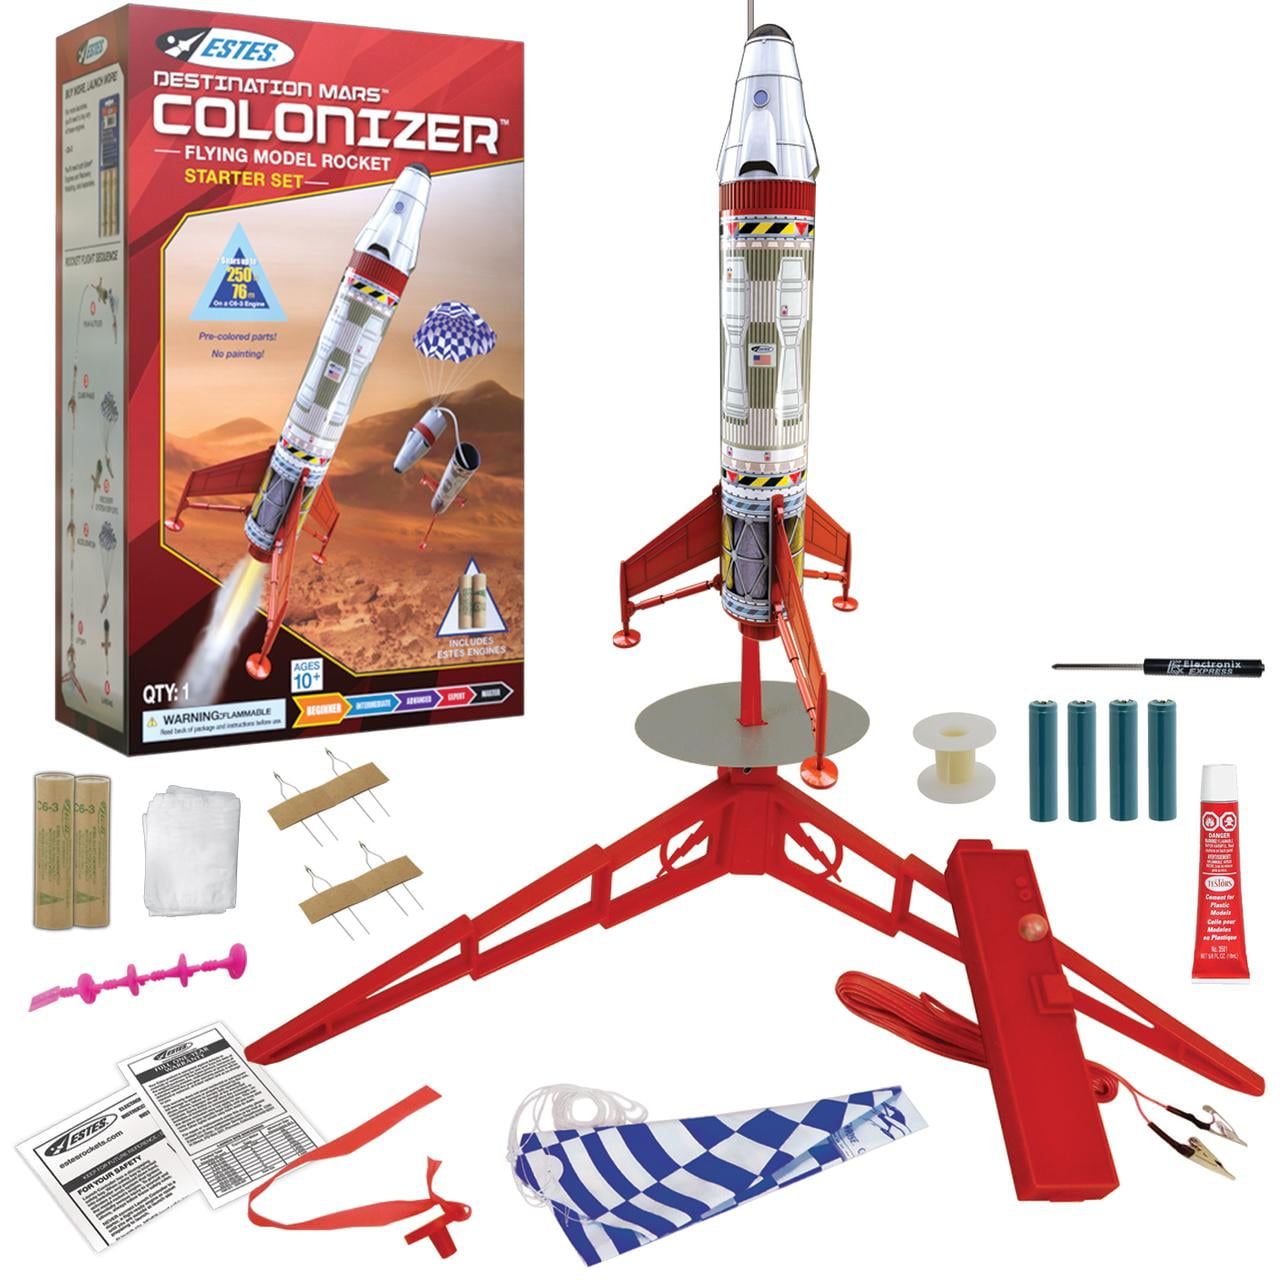 Rocket Launcher or Aqua Sand Grafix Weird Science Mini Experiment Kits 